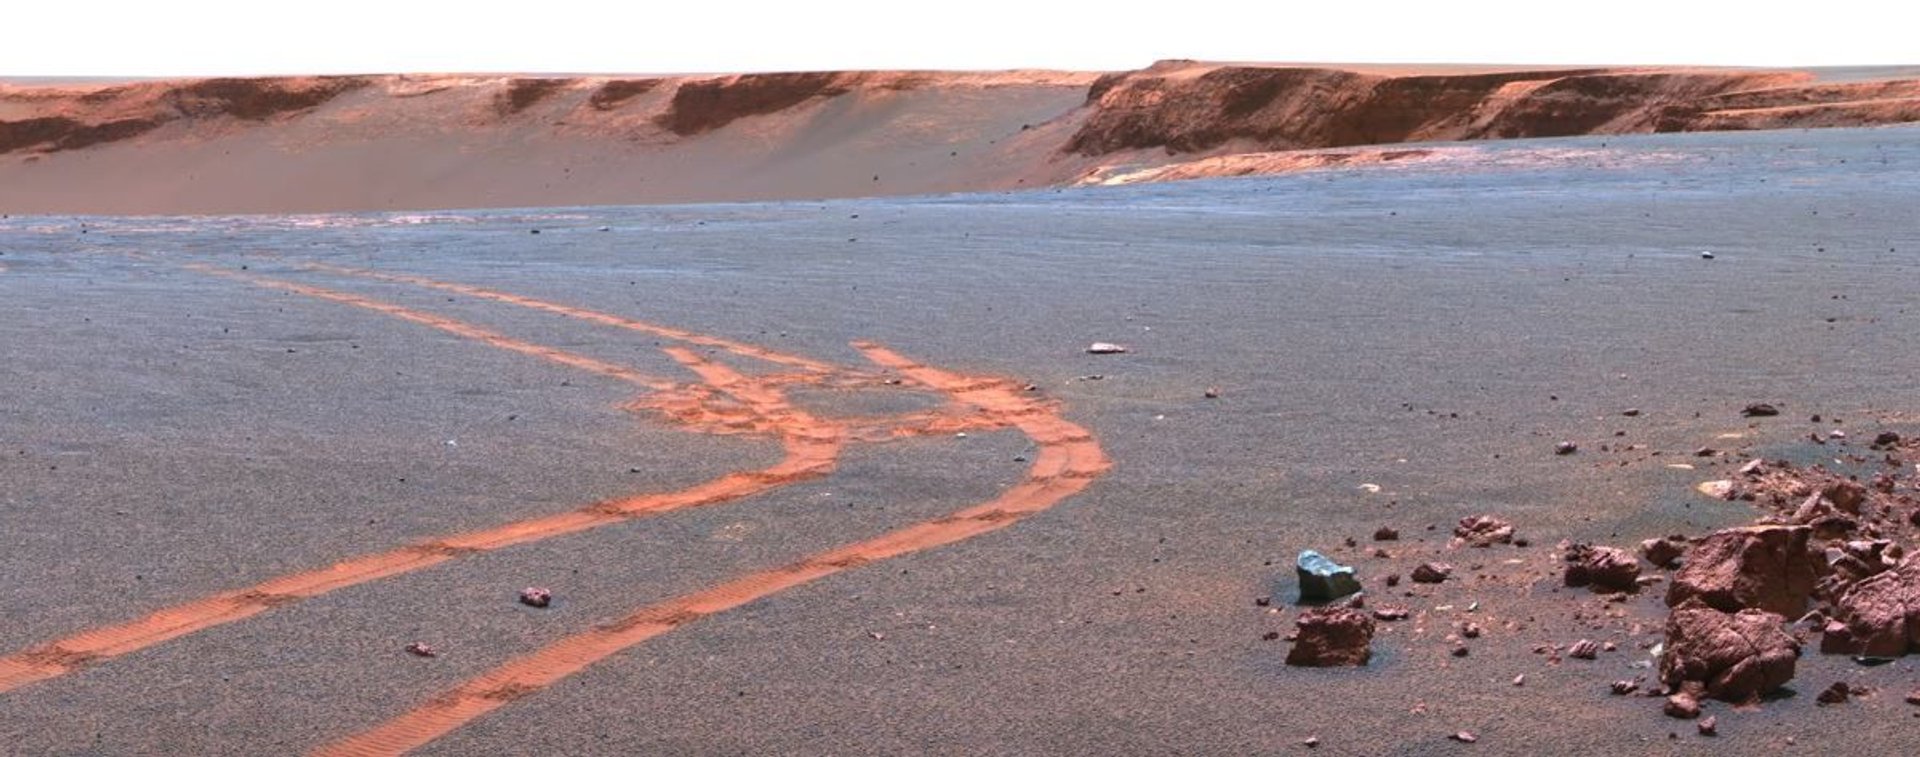 Zdjęcie w wysokiej rozdzielczości z Marsa. Fotografia wykonana przez łazik Curosity.